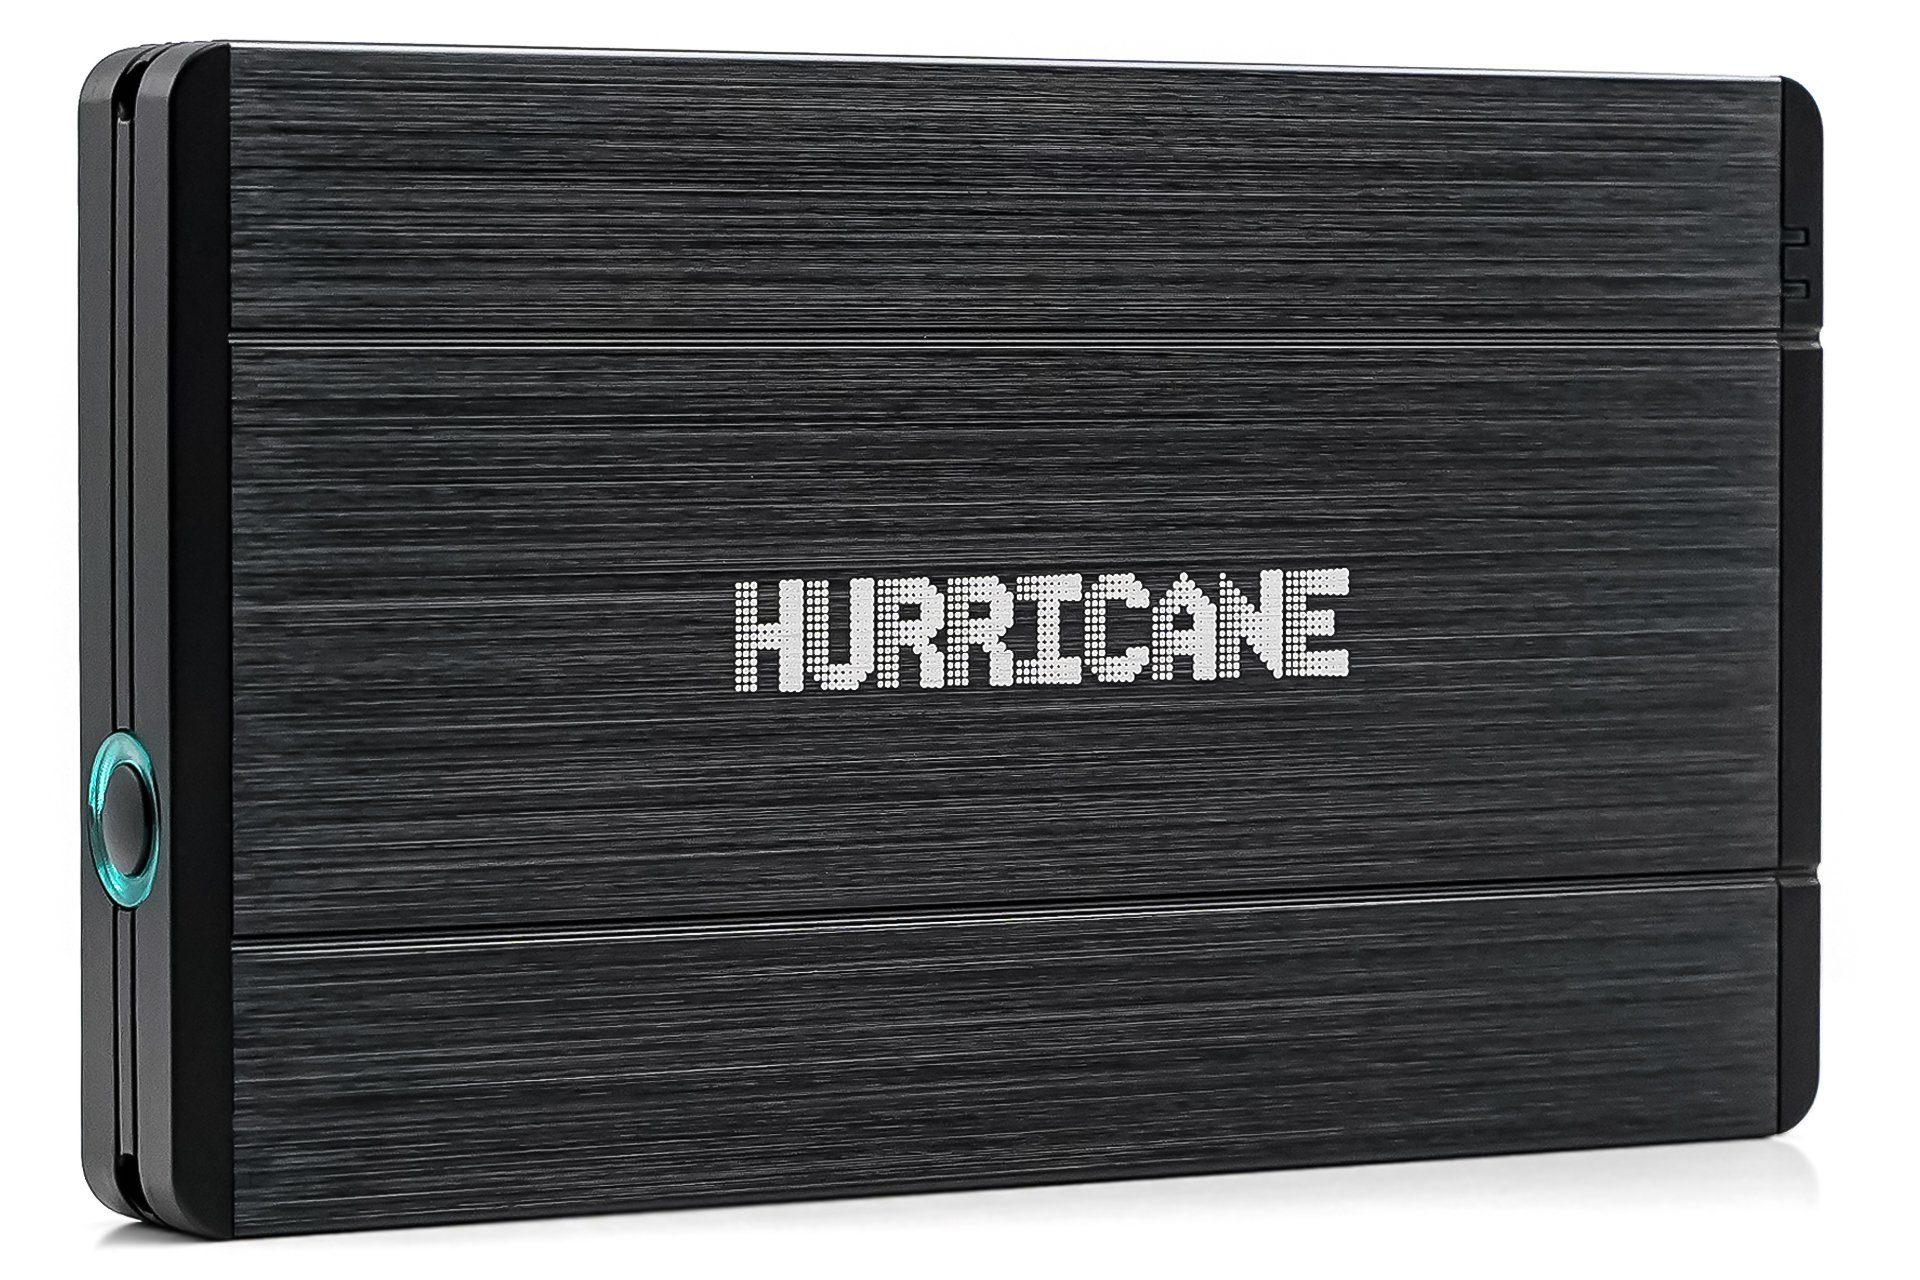 HURRICANE Festplatten-Einbaurahmen Hurricane 12,5mm GD25650 USB 3.0 Mini 10pin Aluminium externes Festpl